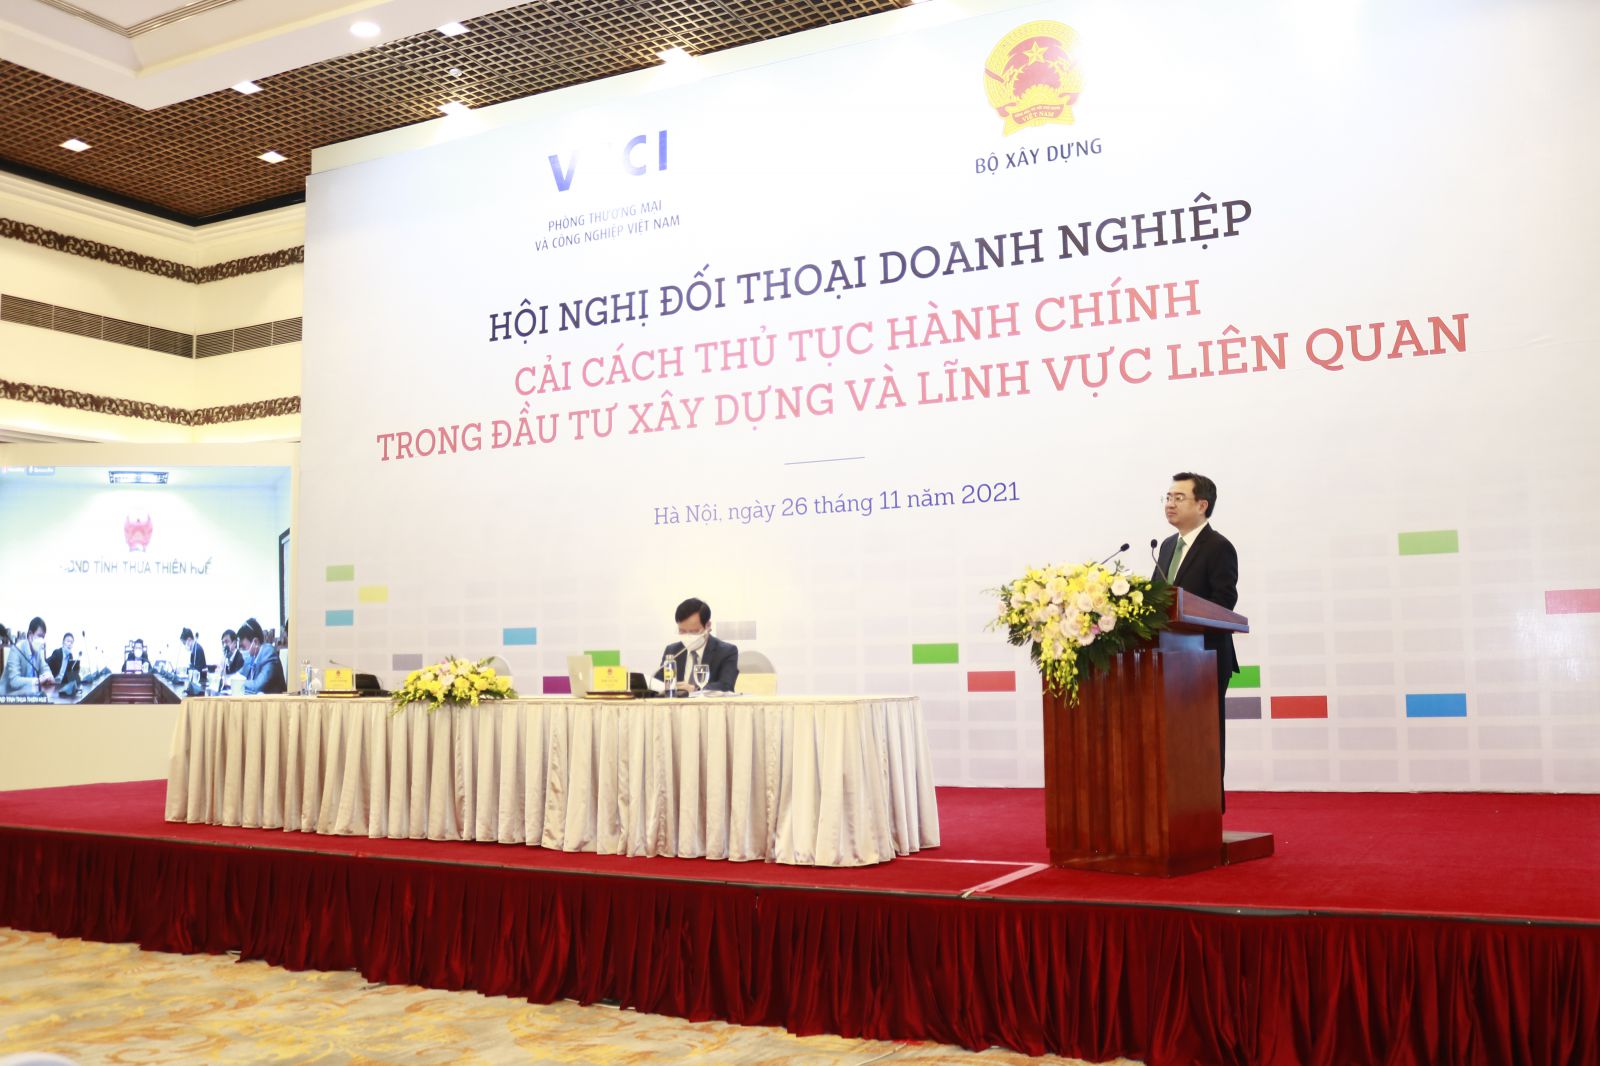 Bộ trưởng Bộ Xây dựng Nguyễn Thanh Nghị phát biểu tại Hội nghị đối thoại doanh nghiệp